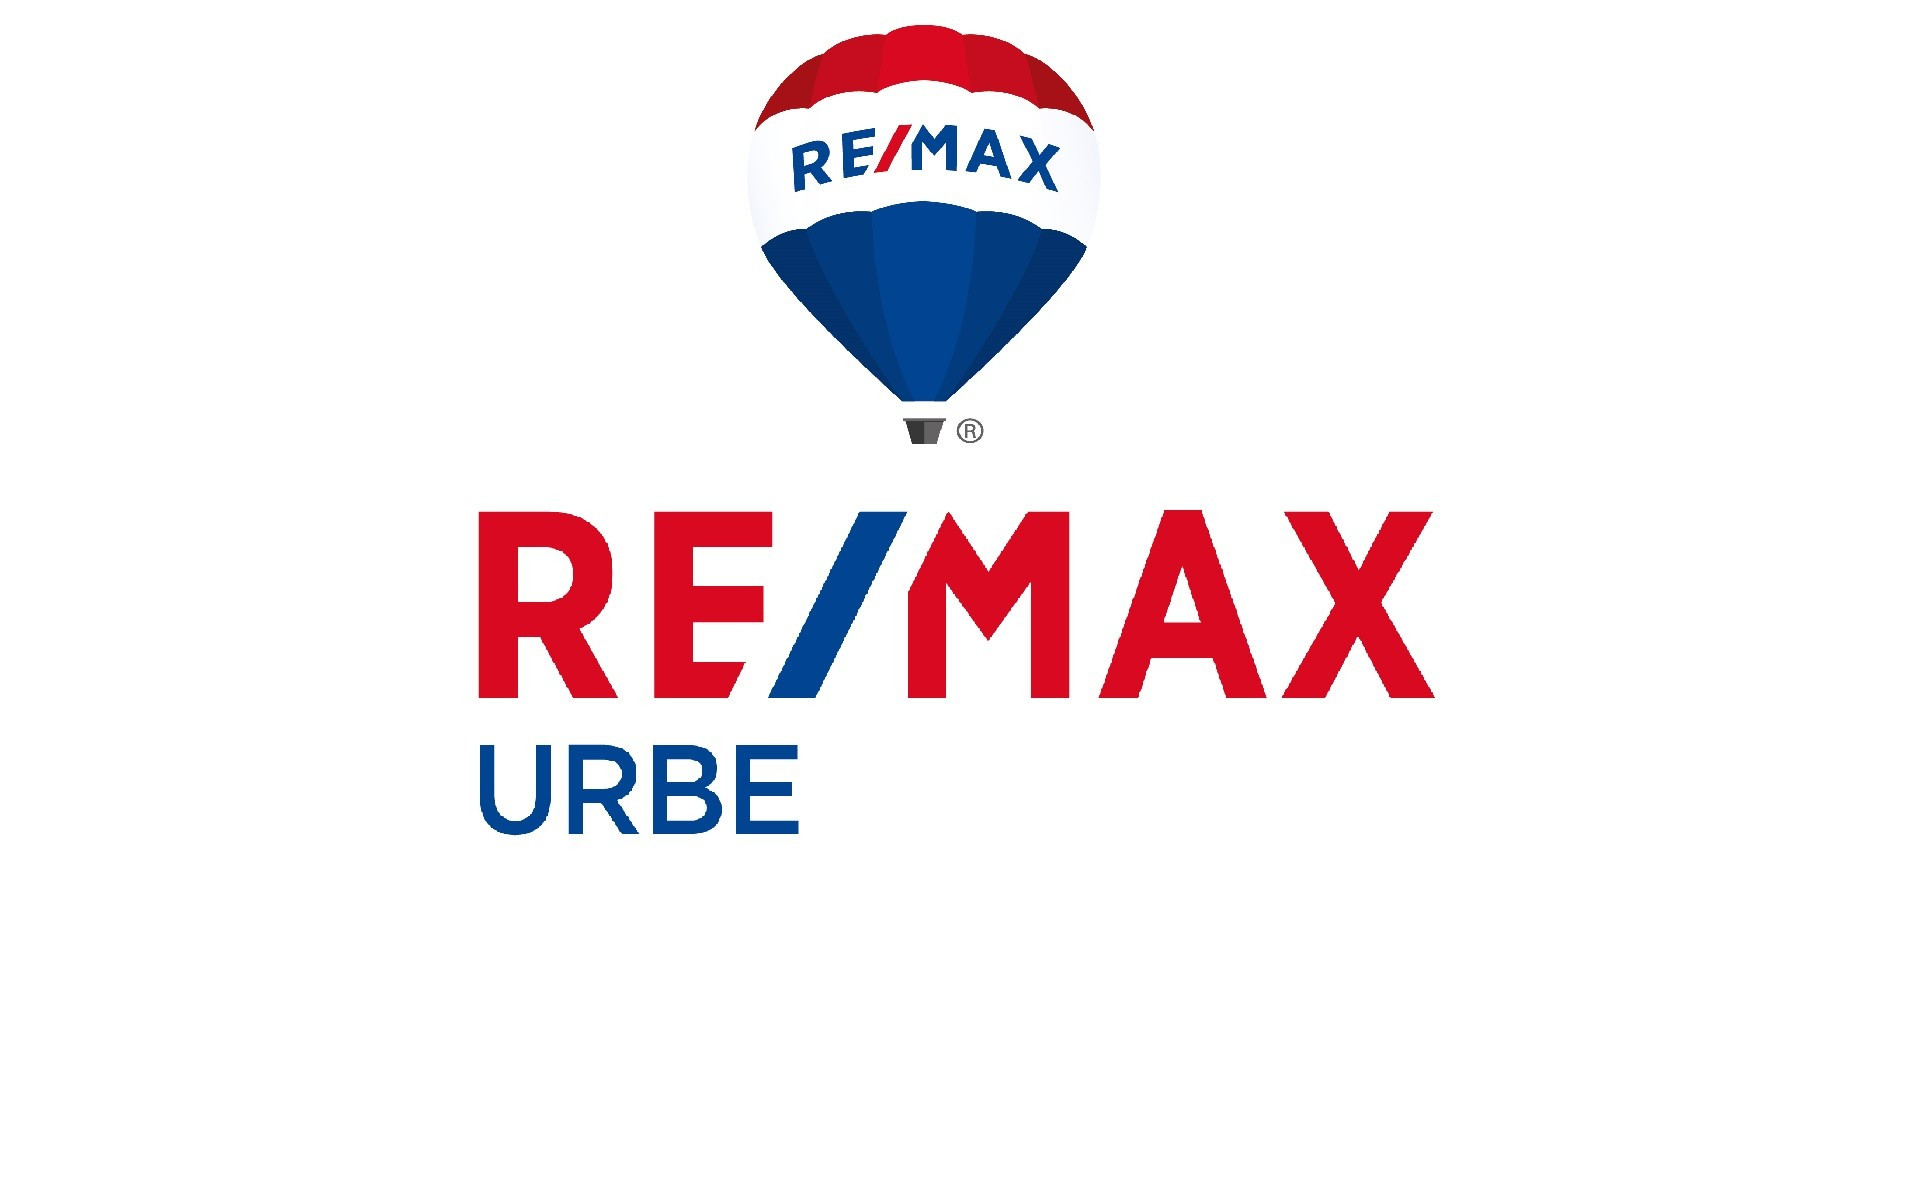  RE/MAX URBE